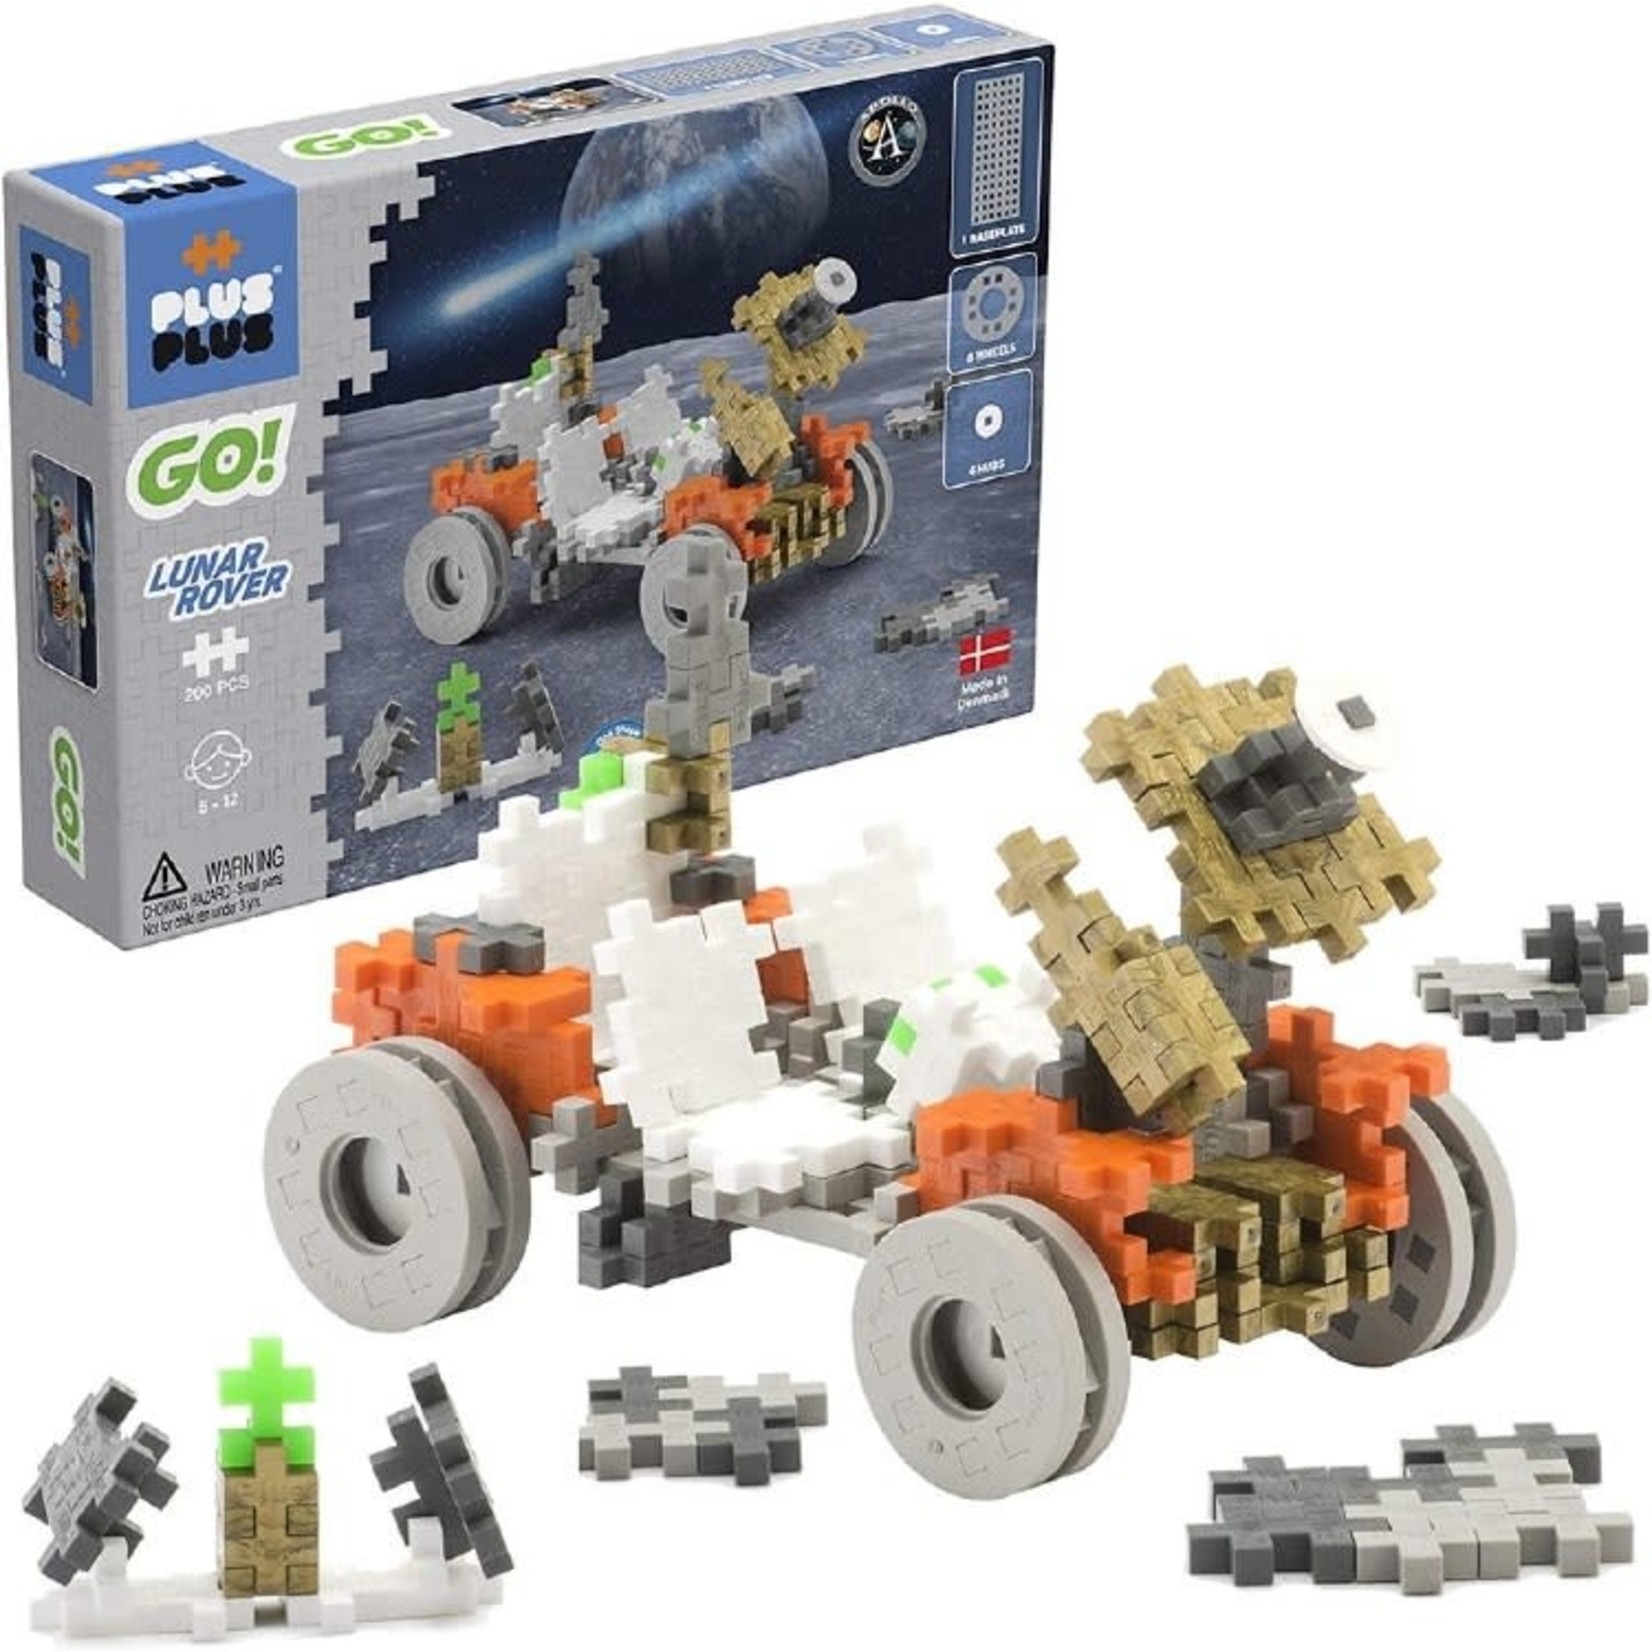 PlusPlus PLUSPLUS - GO! "Lunar Rover" 200 pieces